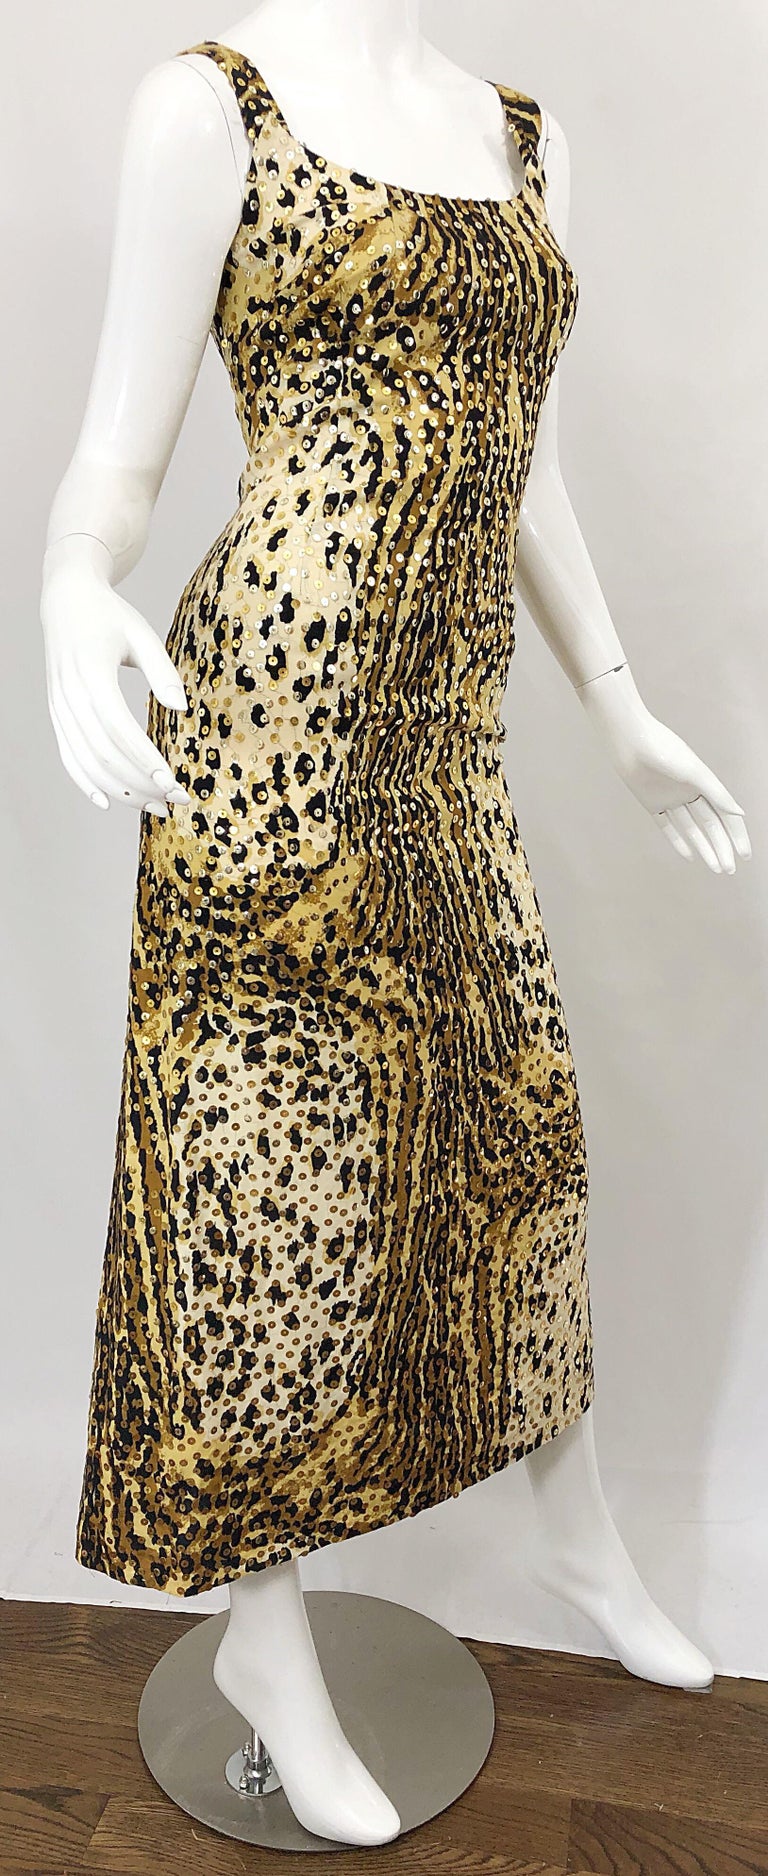 Mollie Parnis 1970s Leopard Cheetah Print Sequined Vintage 70s Cotton Midi Dress For Sale 5